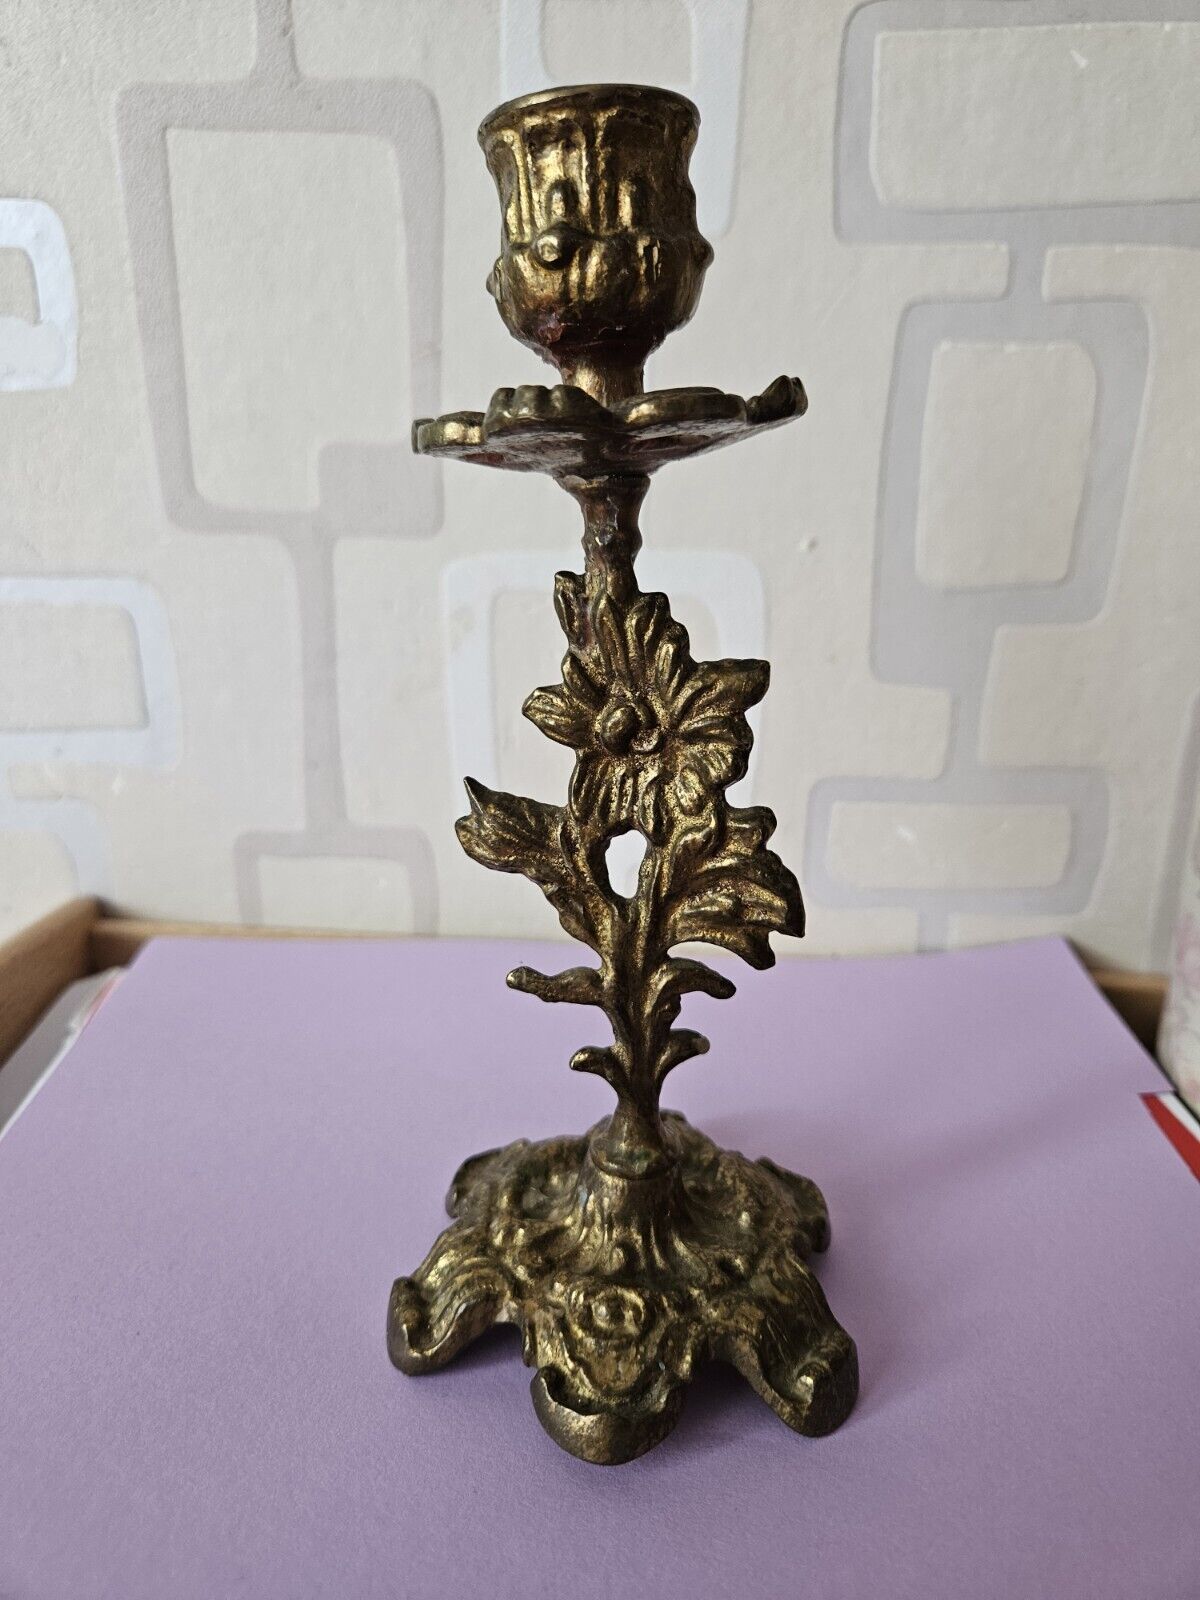 RRR RARE Antique Vintage Ornate Floral Brass Candlestick